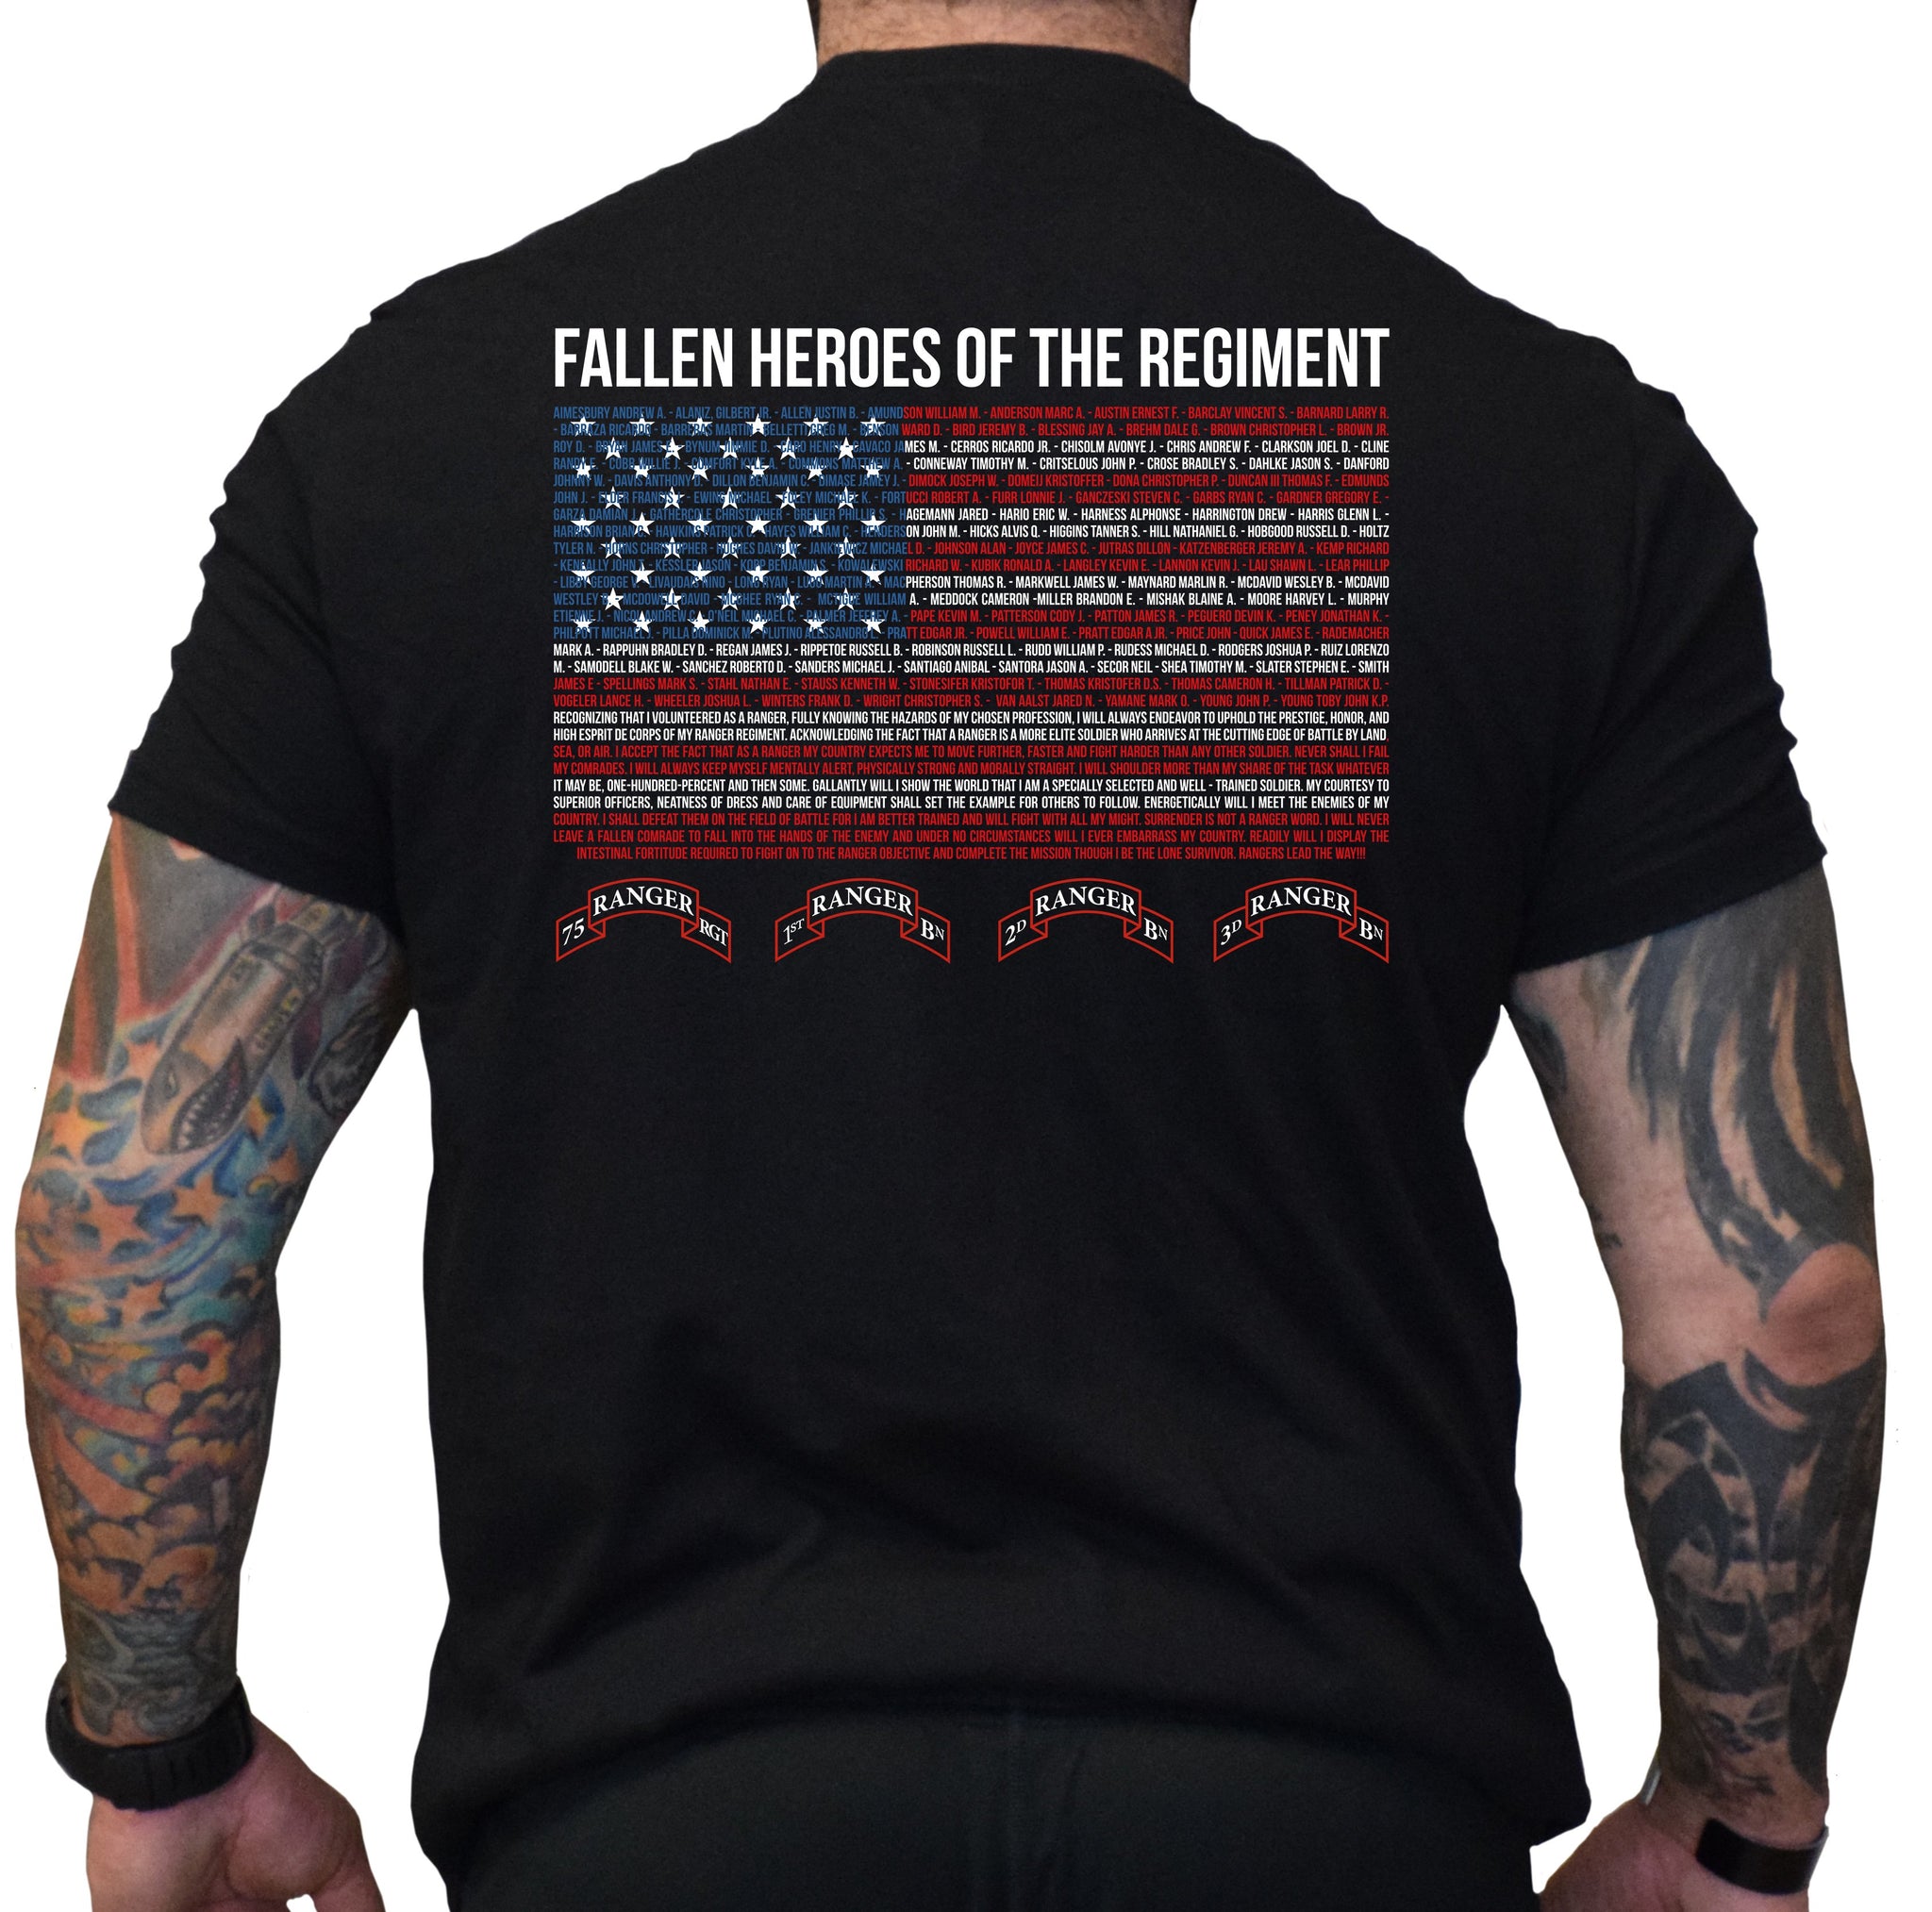 75th ranger regiment shirt